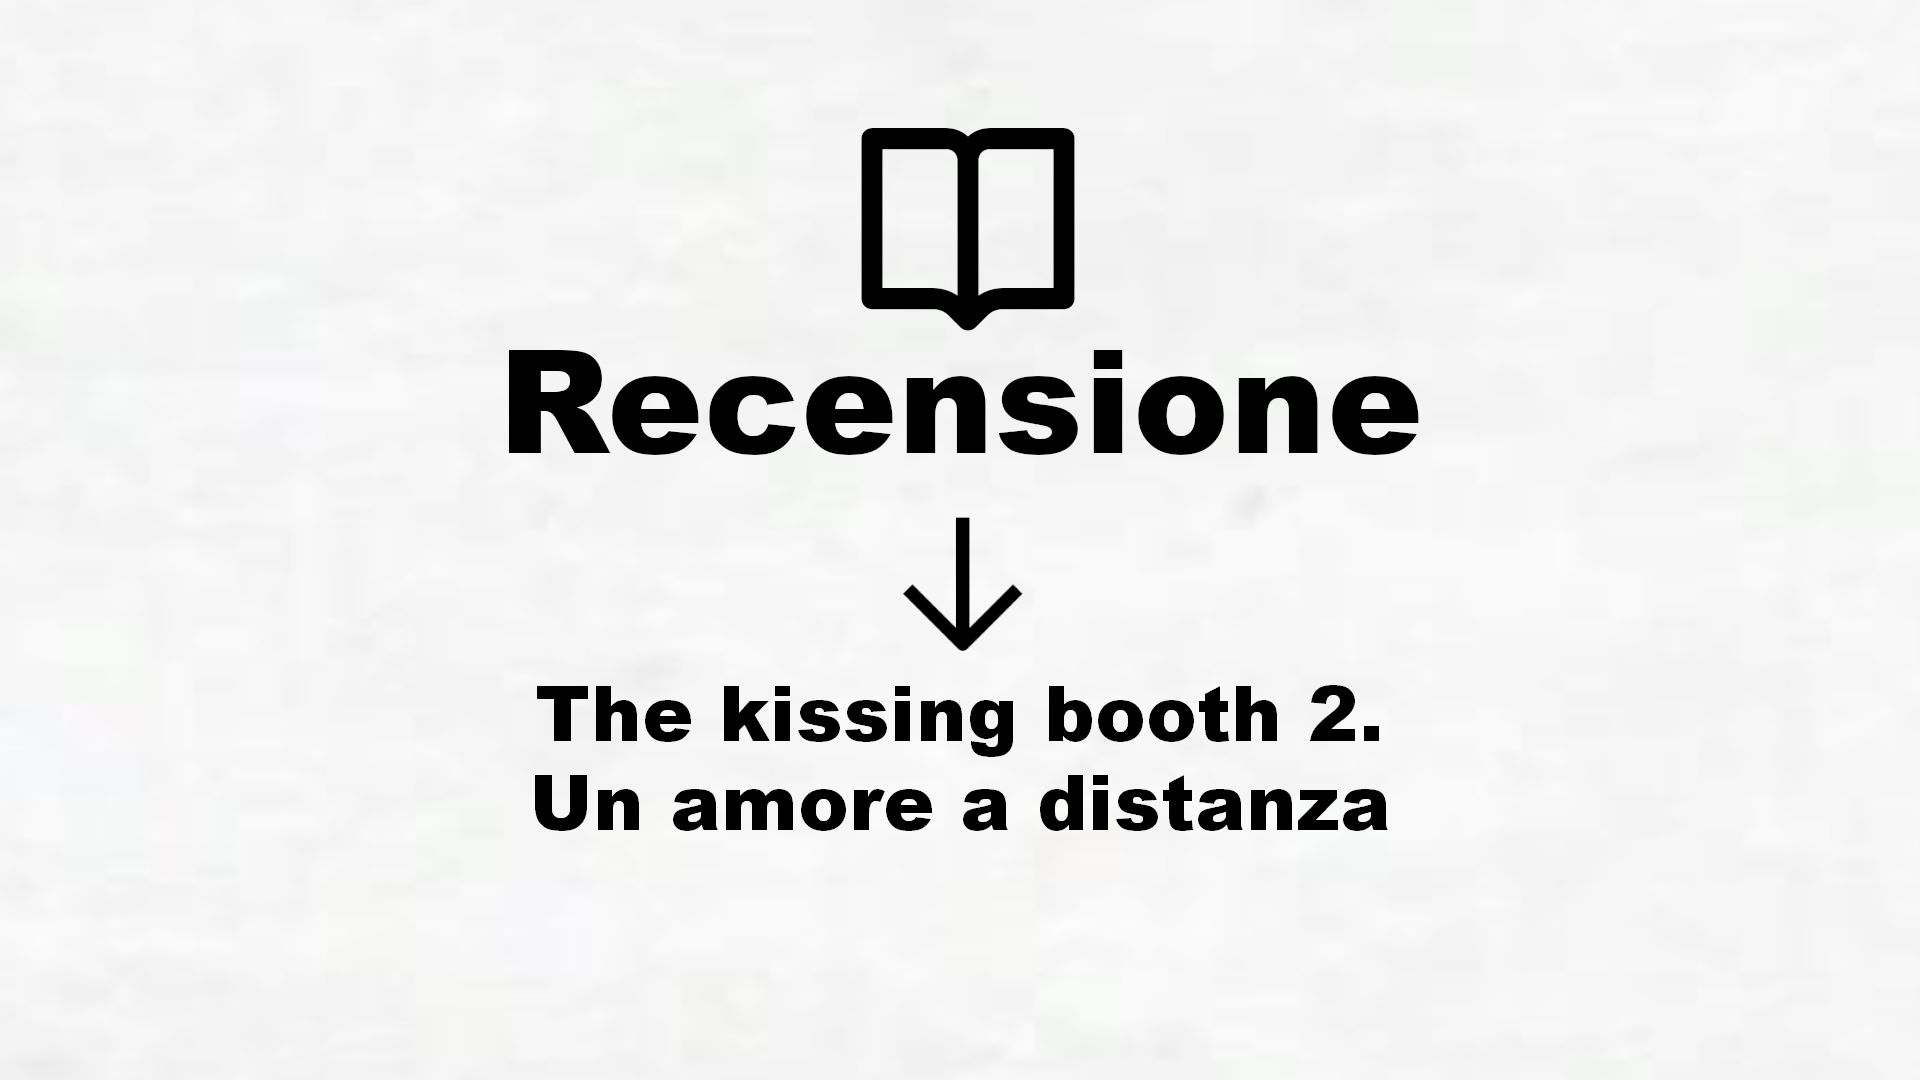 The kissing booth 2. Un amore a distanza – Recensione Libro